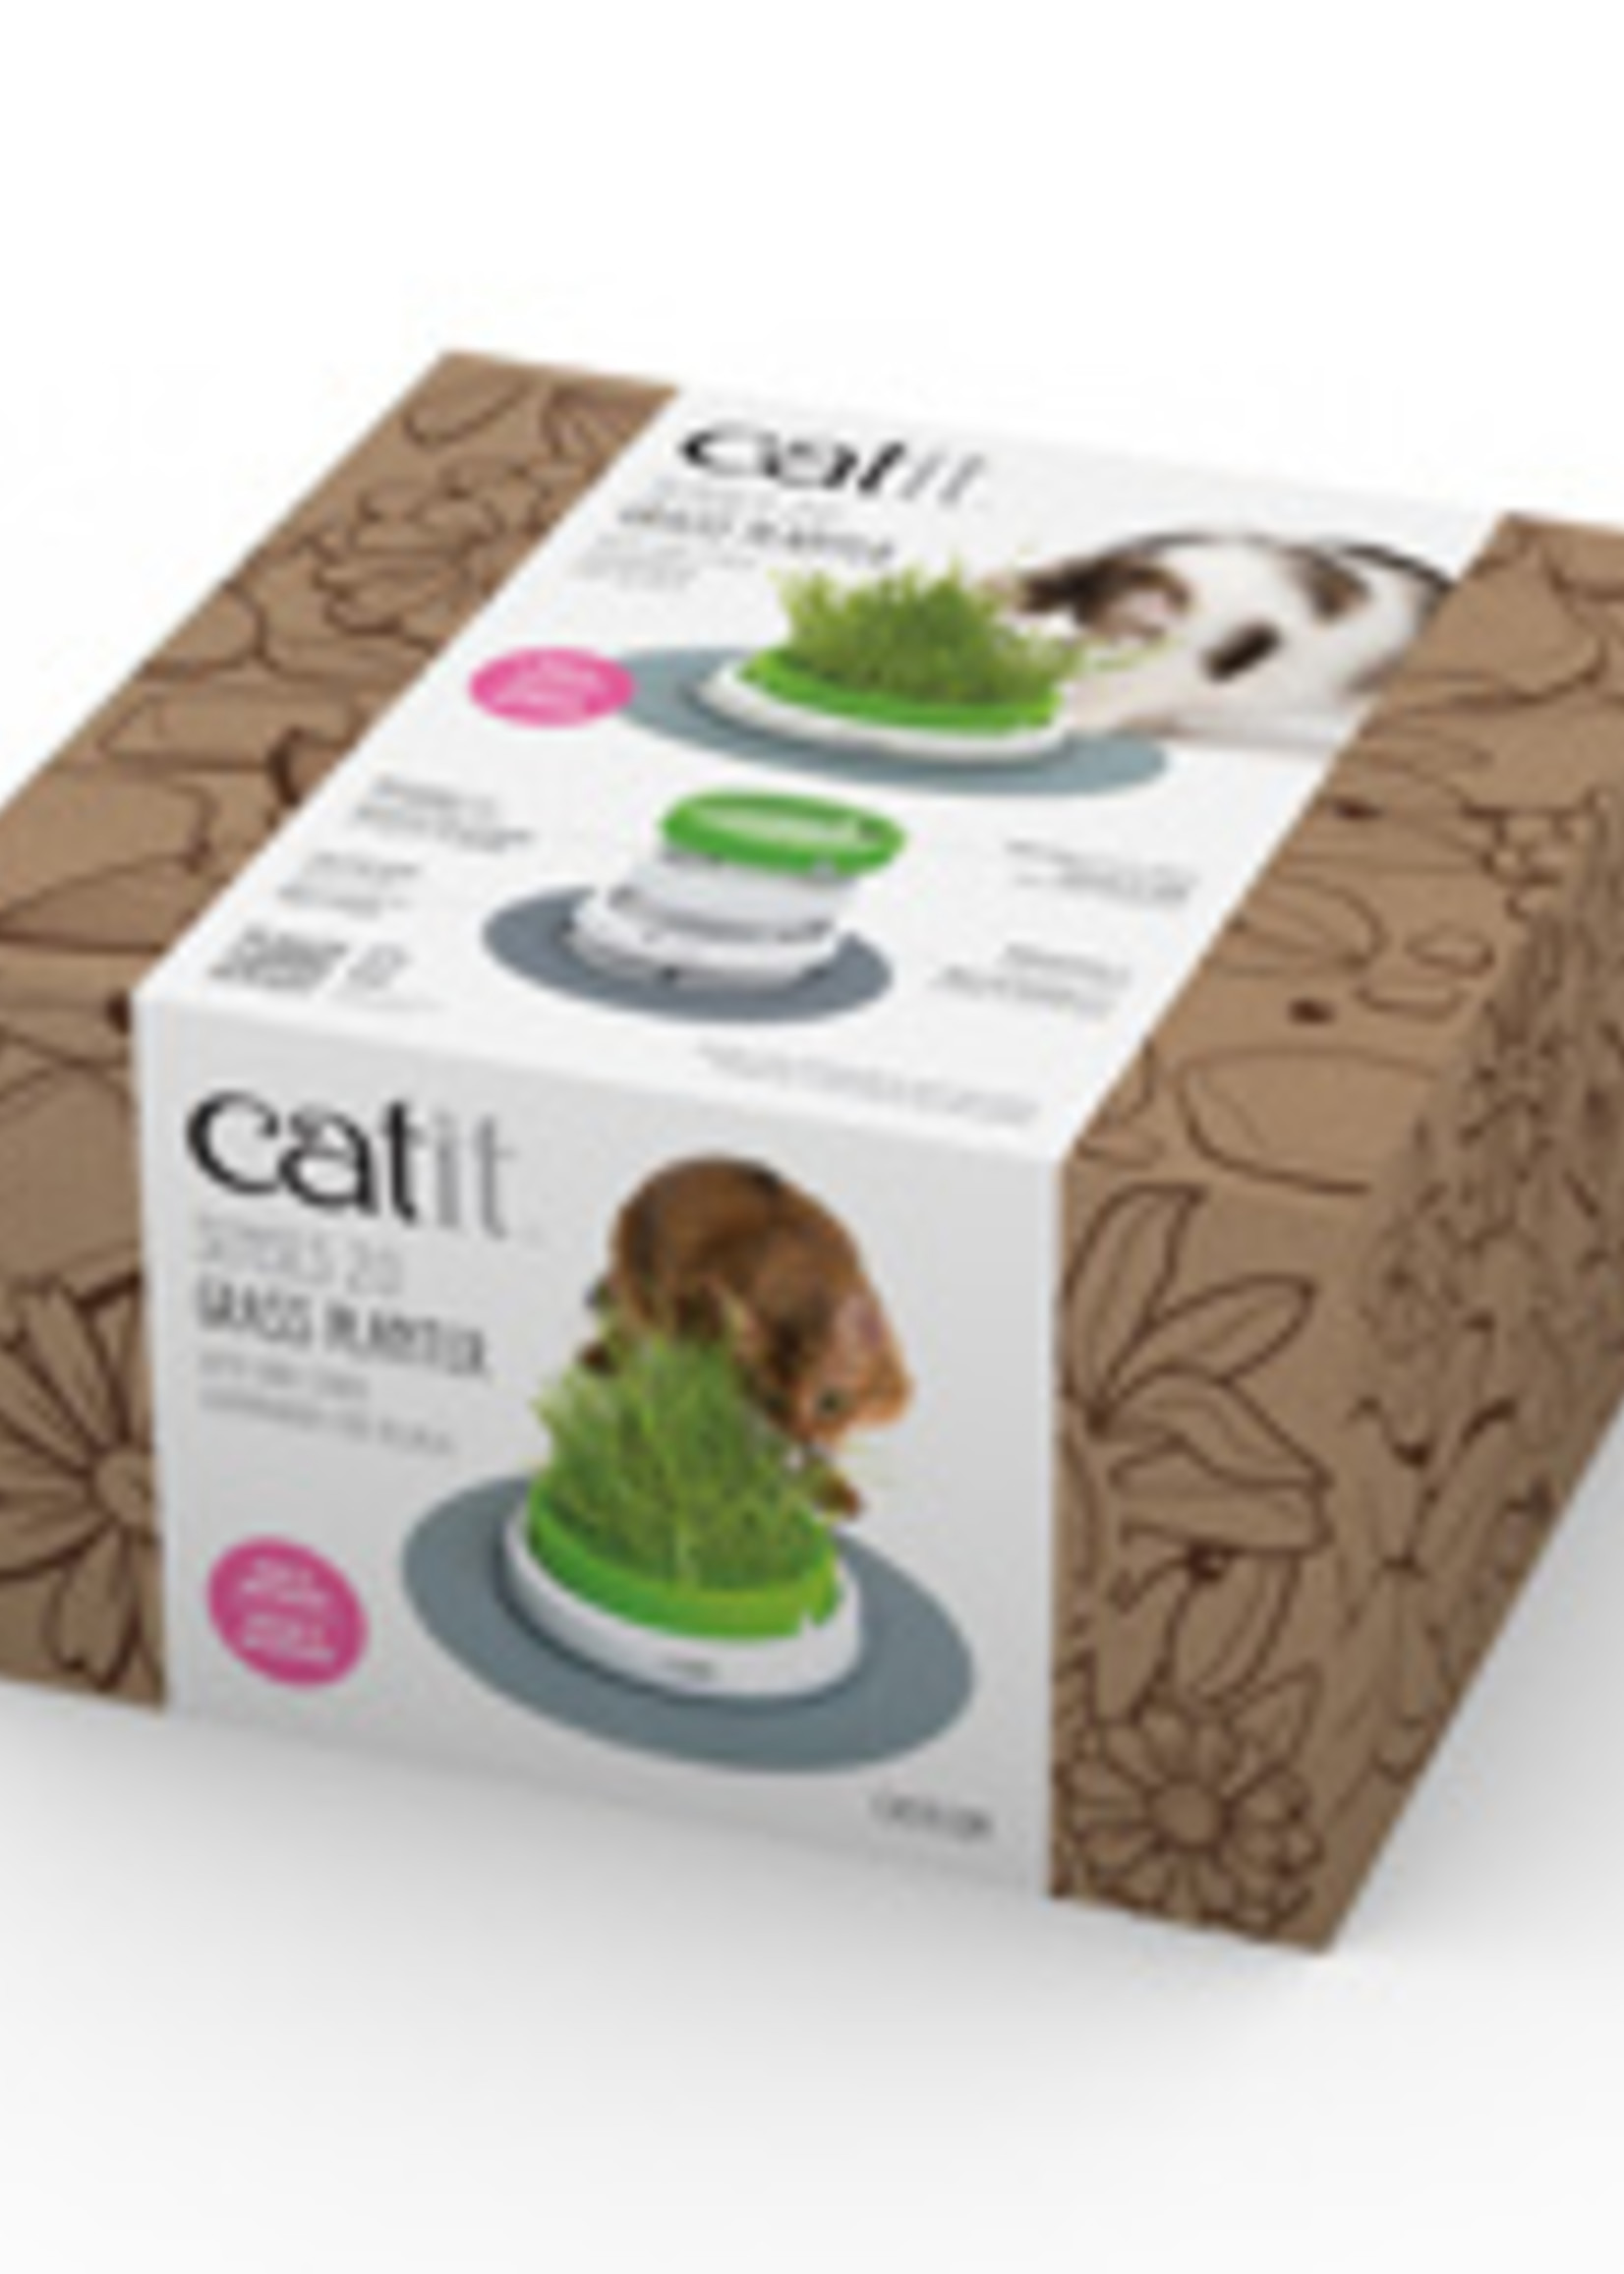 Catit® Catiti® Senses 2.0 Grass Planter